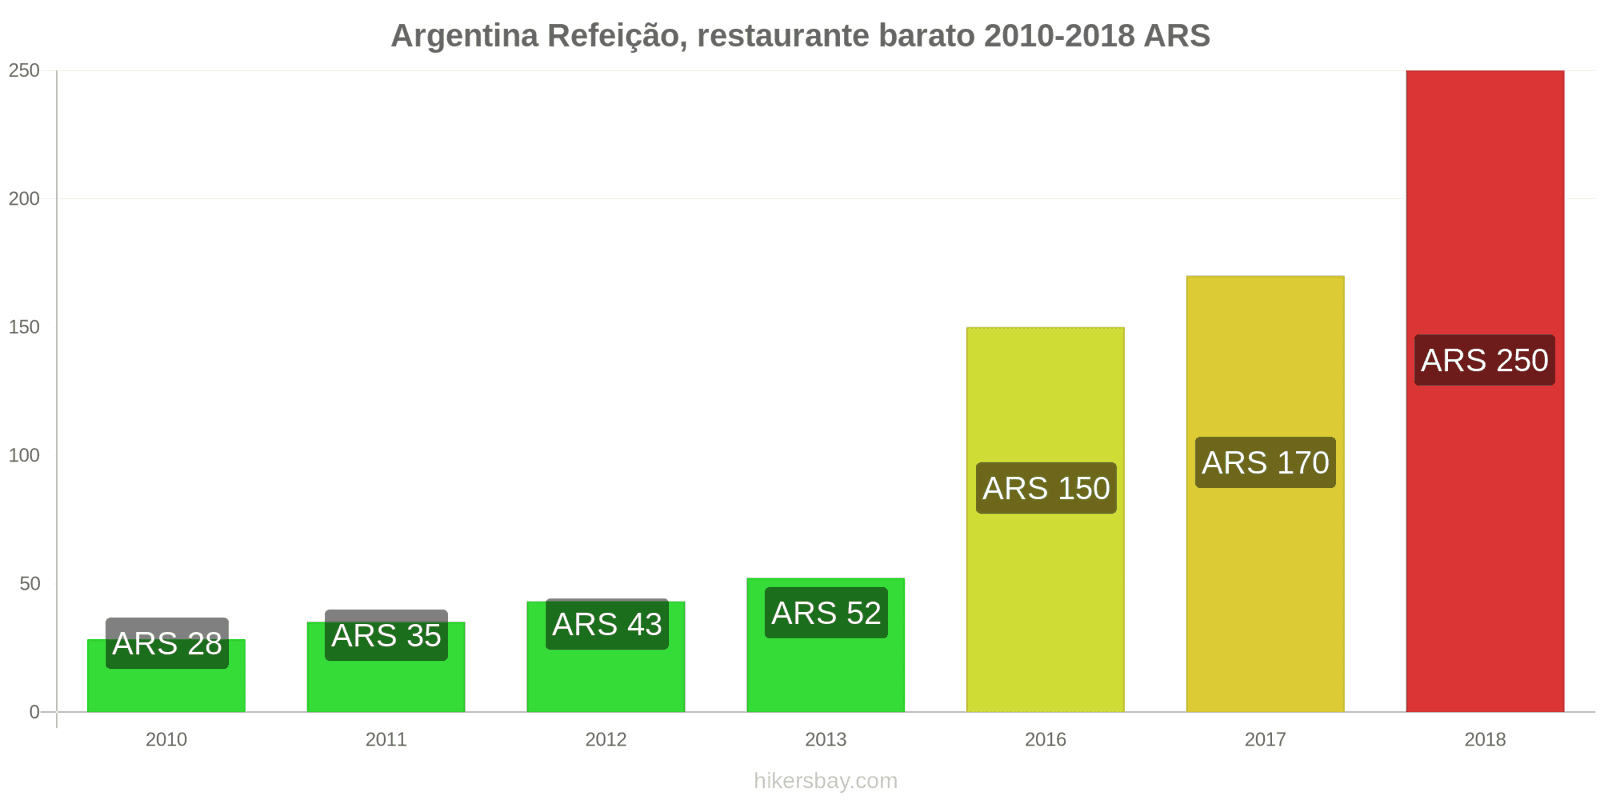 Argentina mudanças de preços Refeição em um restaurante econômico hikersbay.com